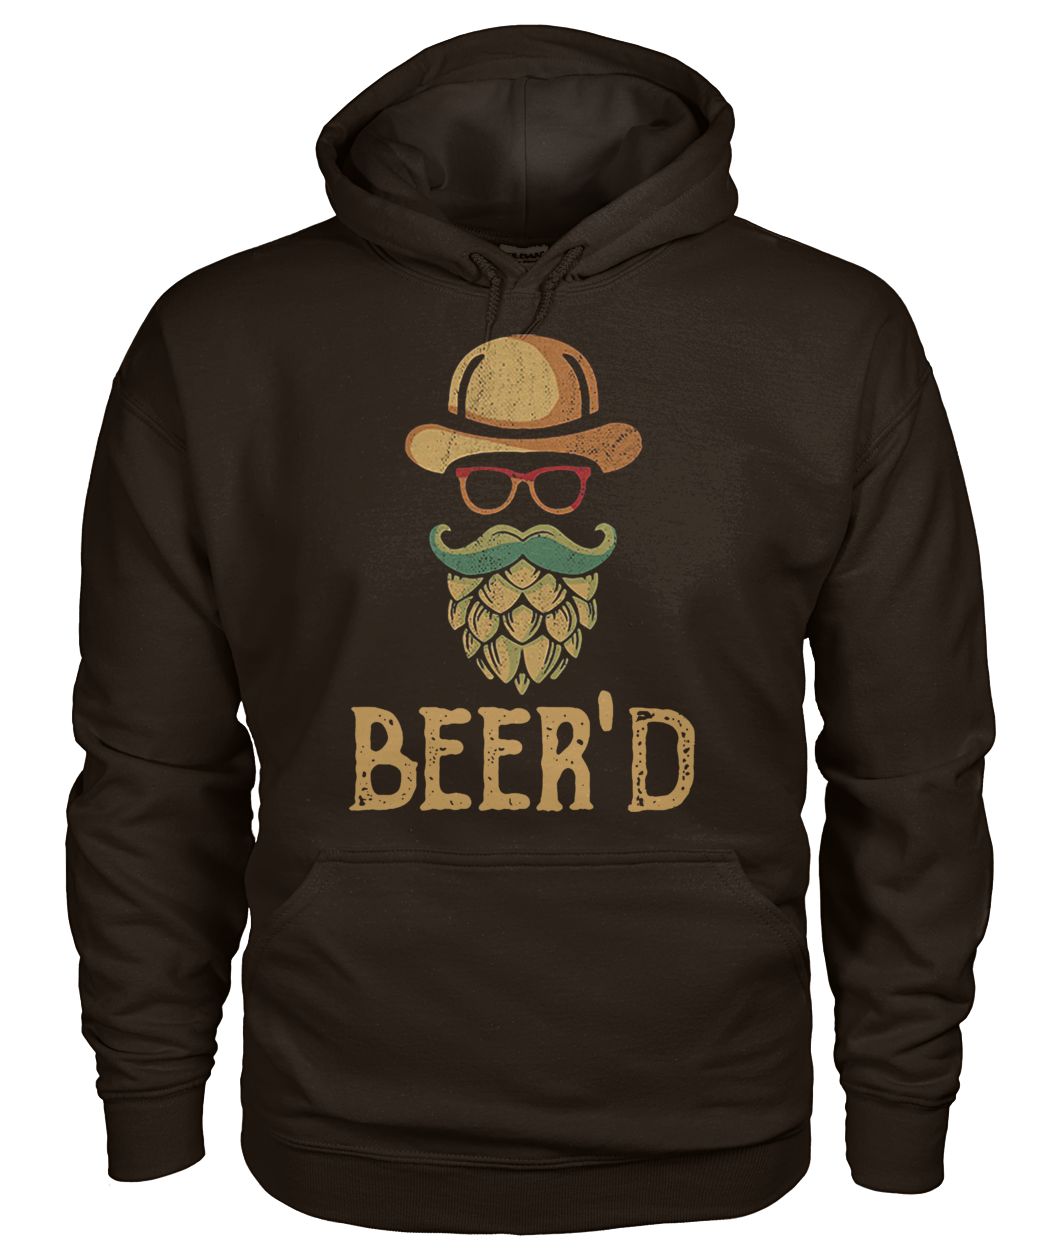 Vintage beer'd beer beard gildan hoodie